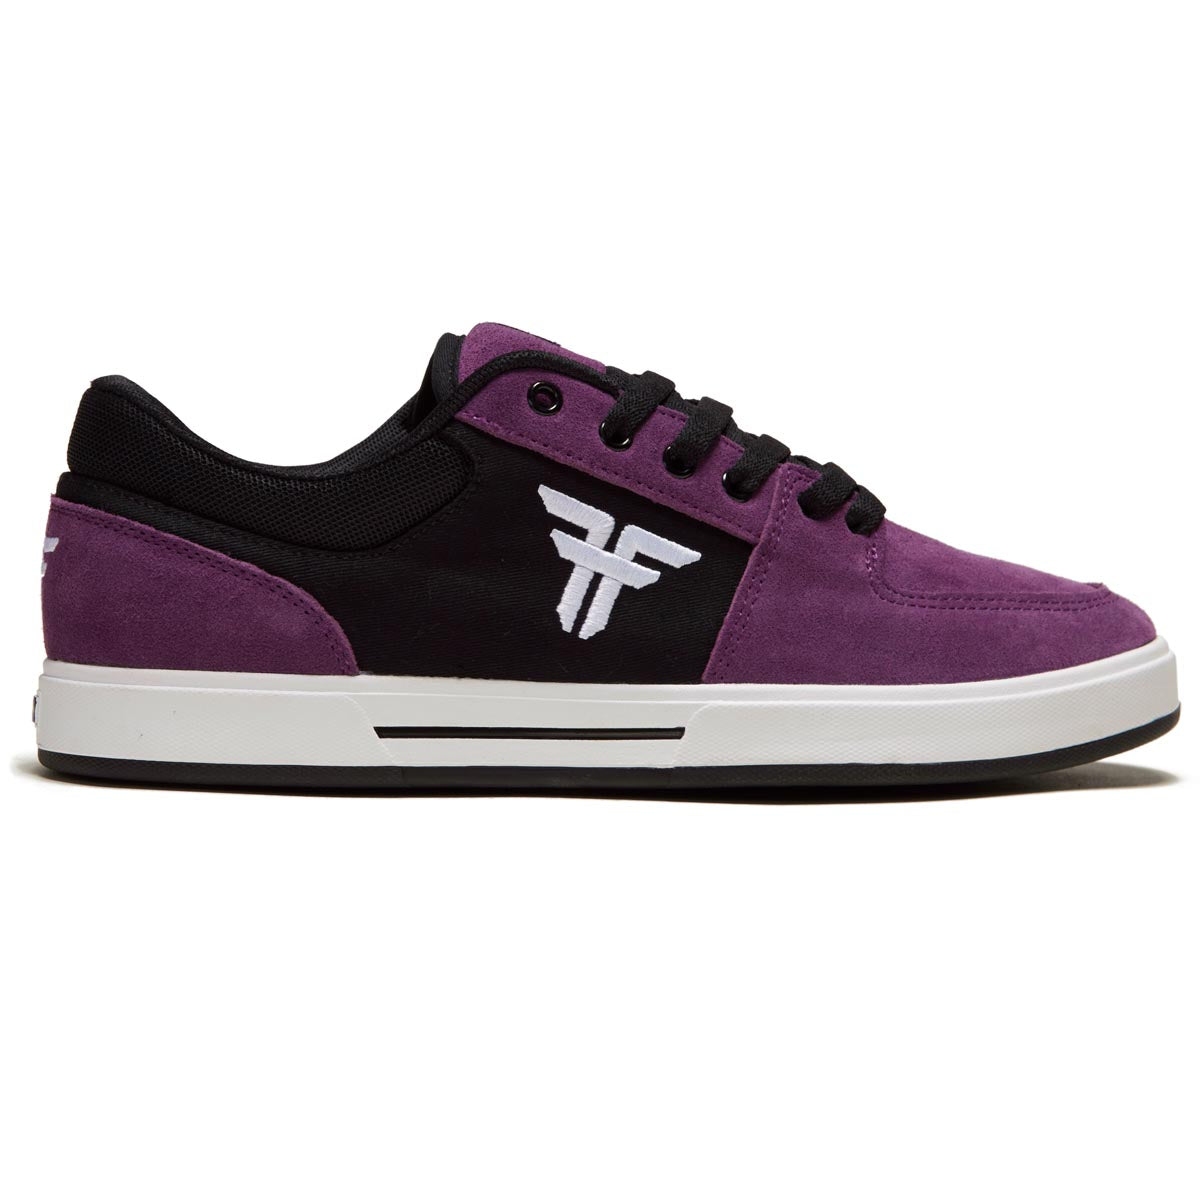 Fallen Patriot Shoes - Purple/Black image 1